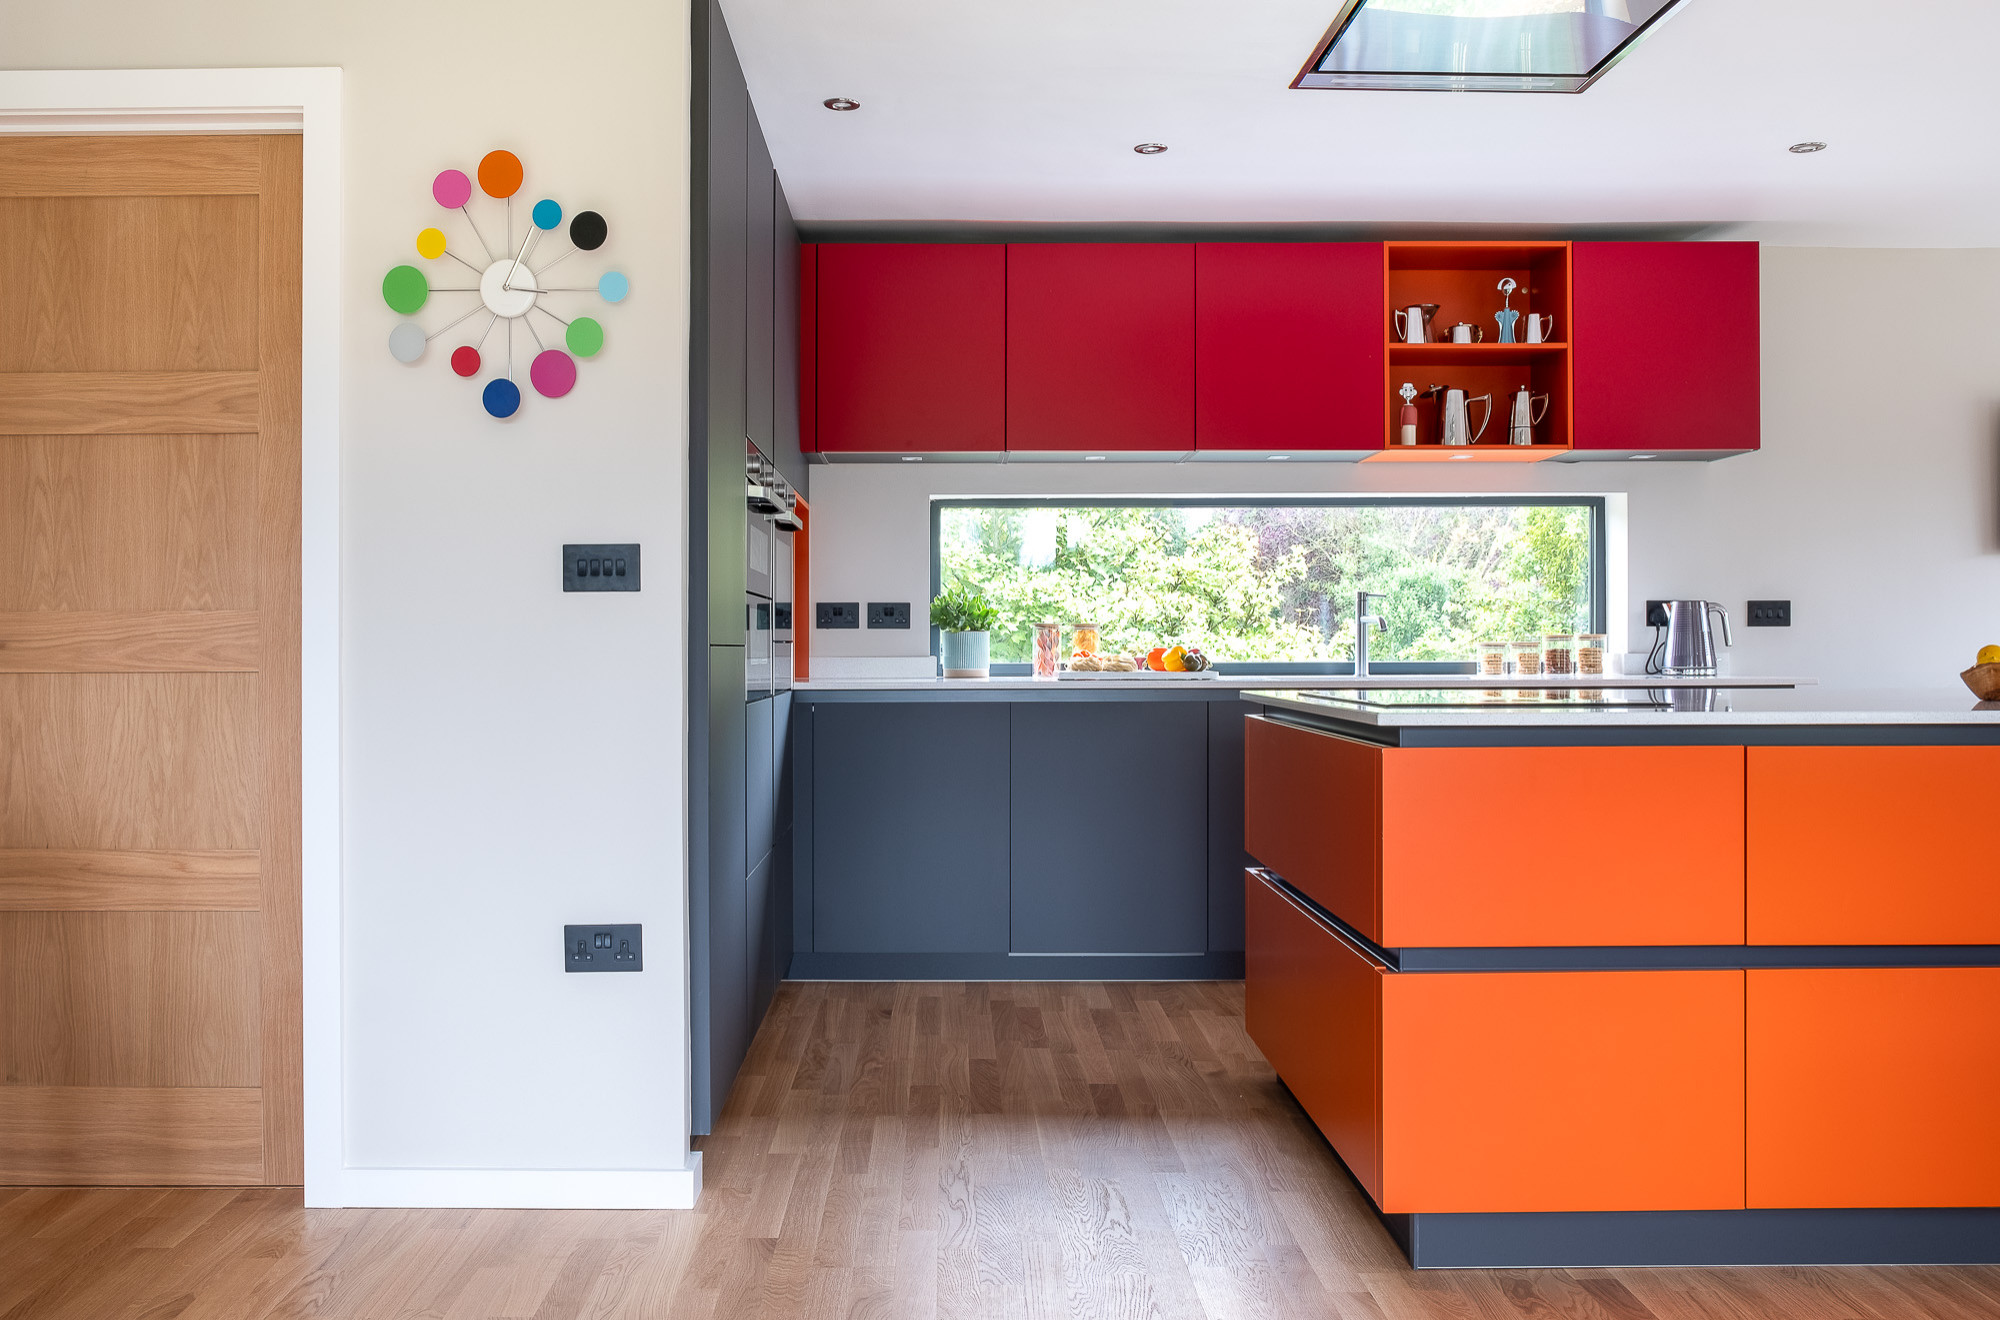 63+ Colorful Kitchen Ideas (JOYFUL & BRIGHT) - Beautiful Kitchen Design   Mexican style kitchens, Beautiful kitchen designs, Mexican kitchen decor